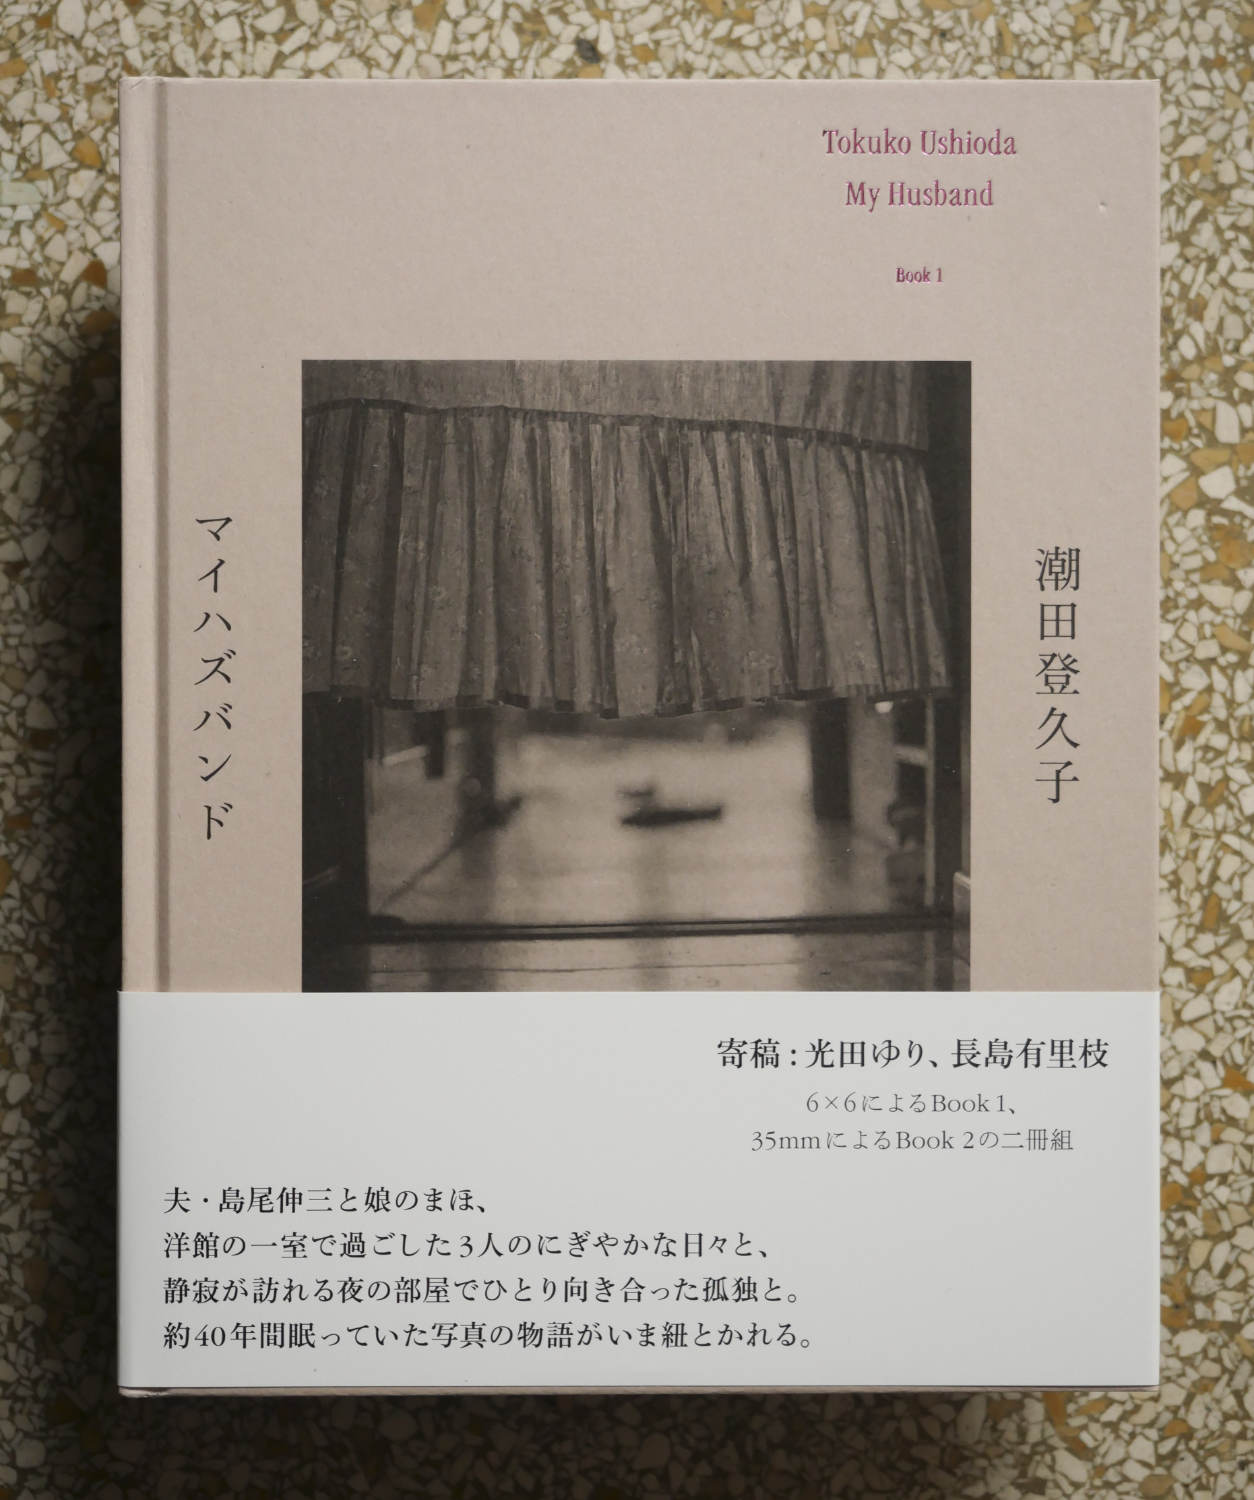 My Husband by Tokuko Ushioda - Tipi bookshop